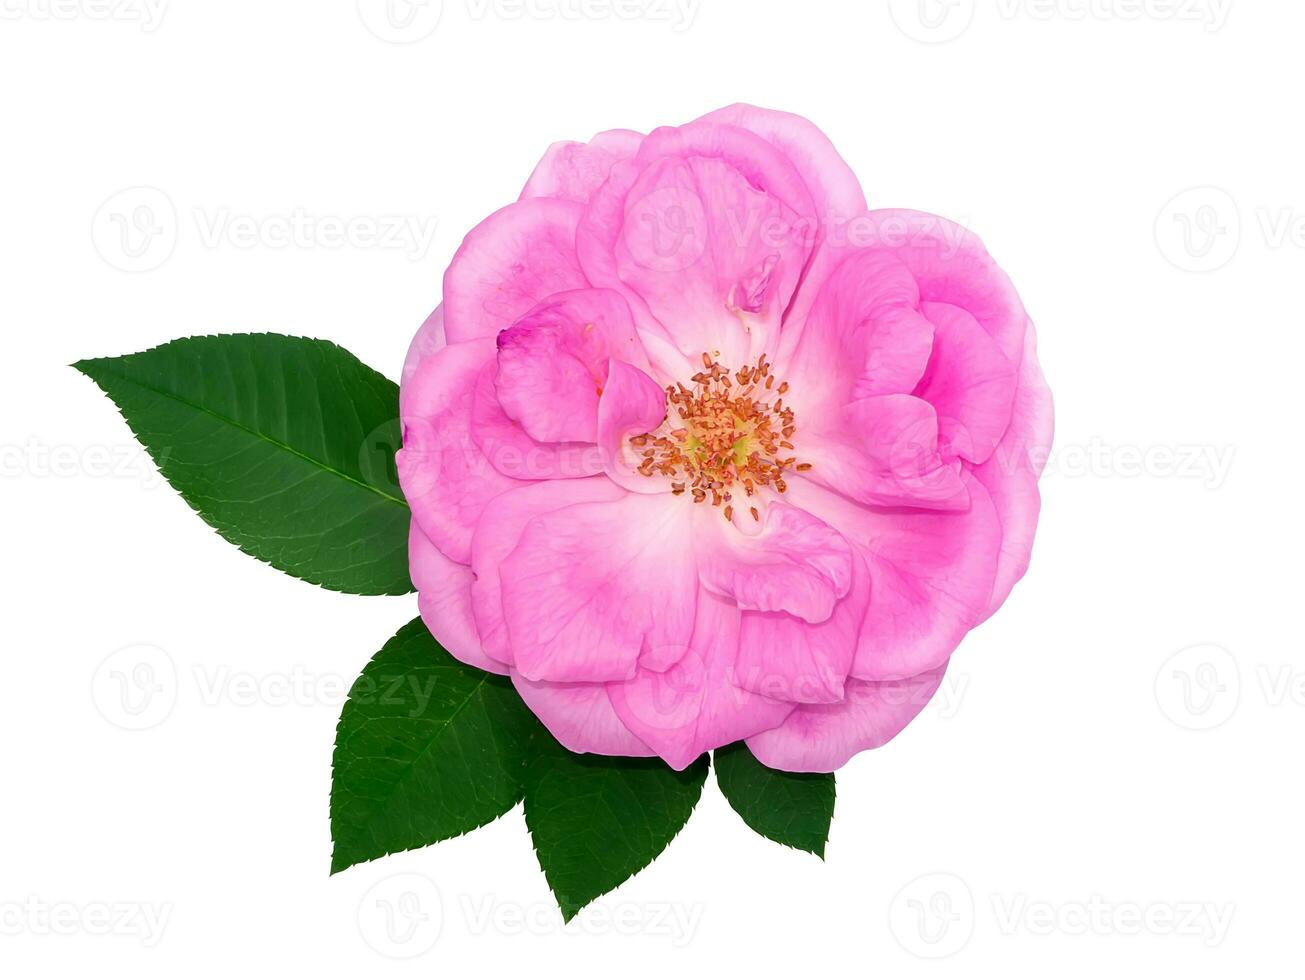 fechar acima Rosa rosa flor em branco fundo. foto